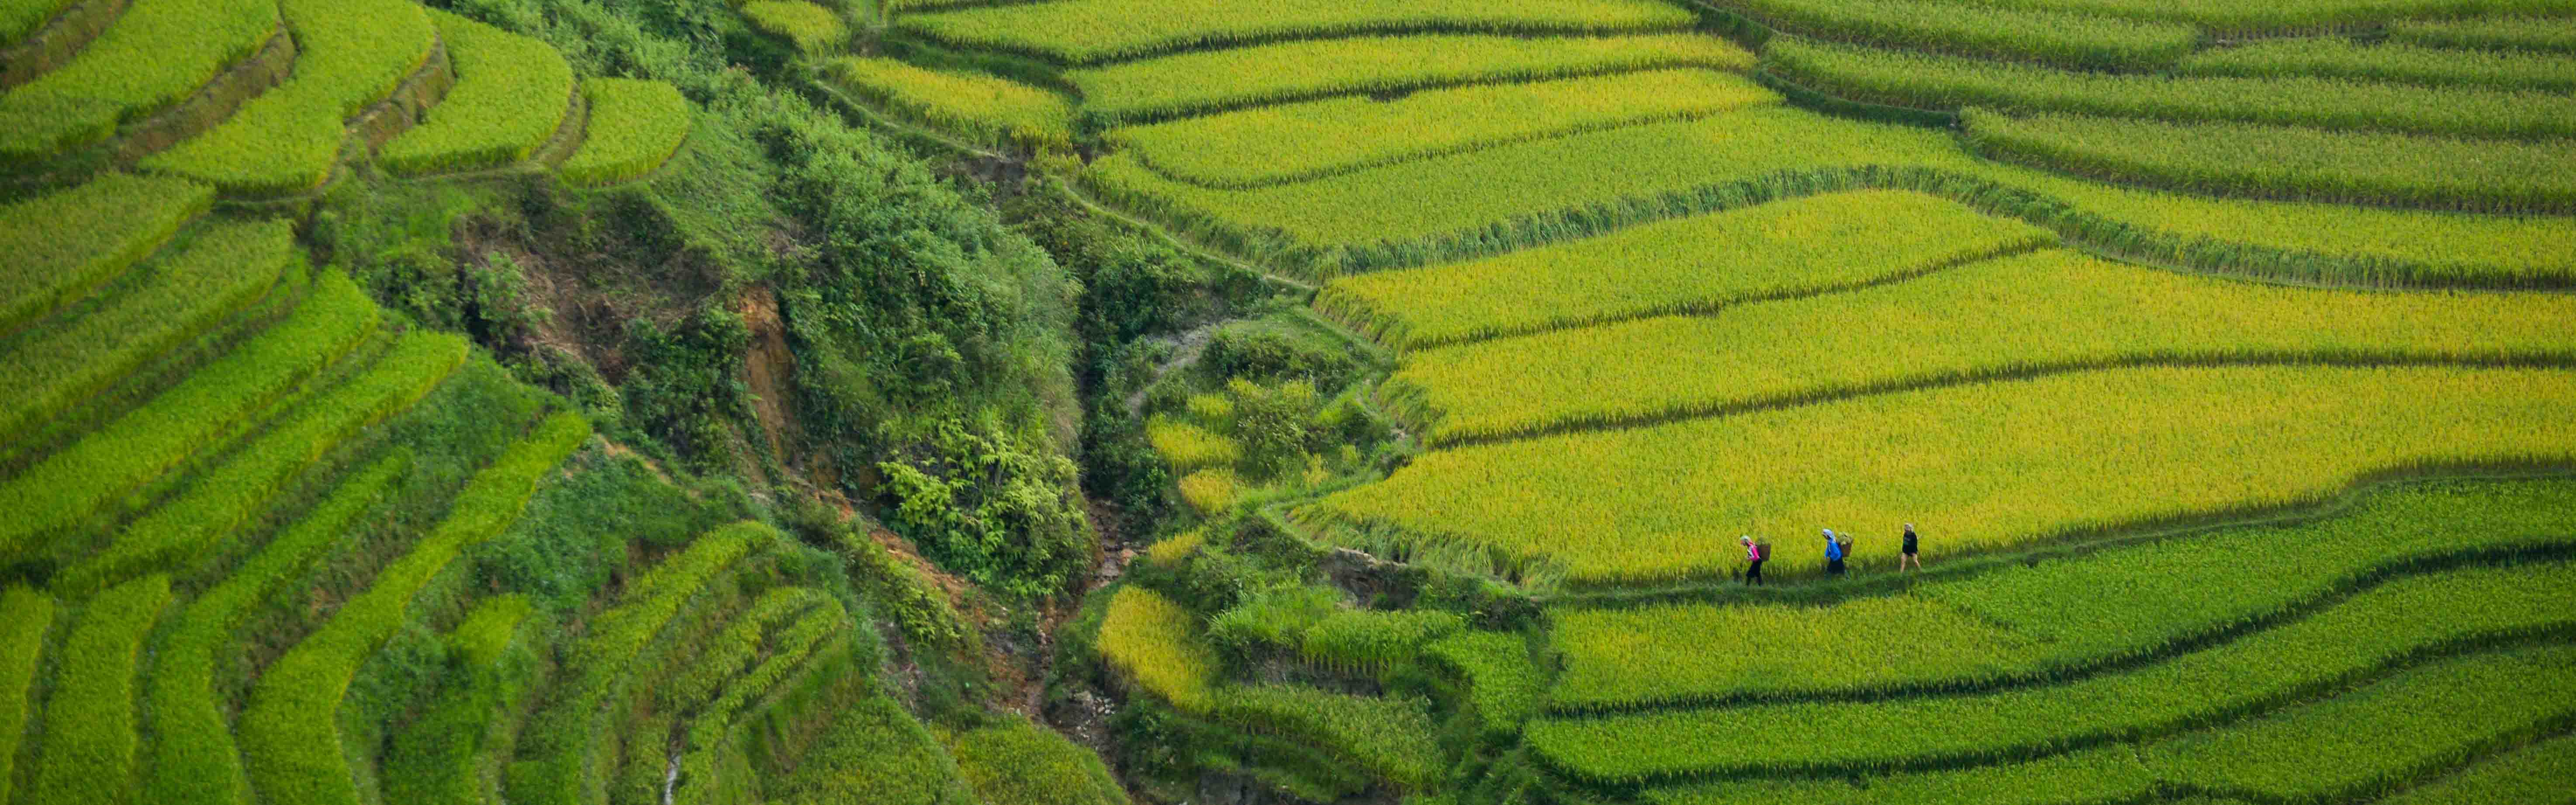 Bỏ túi kinh nghiệm du lịch Việt Nam tự túc cho lần đầu khám phá